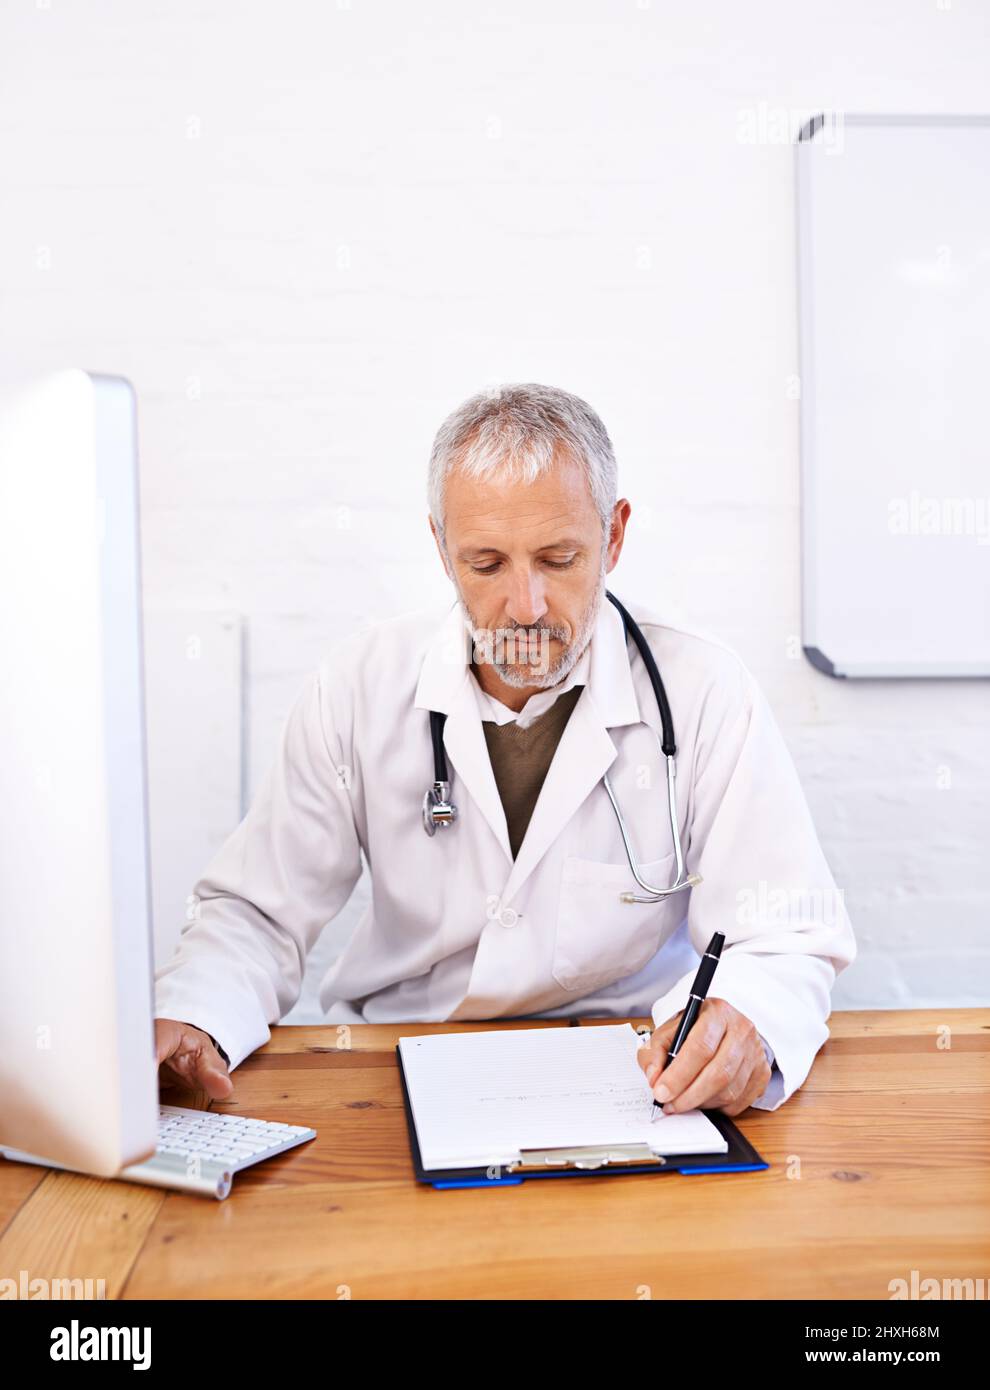 Online-Recherche zu Behandlungsoptionen. Aufnahme eines reifen männlichen Arztes, der an einem Desktop-Computer in seinem Büro arbeitet. Stockfoto